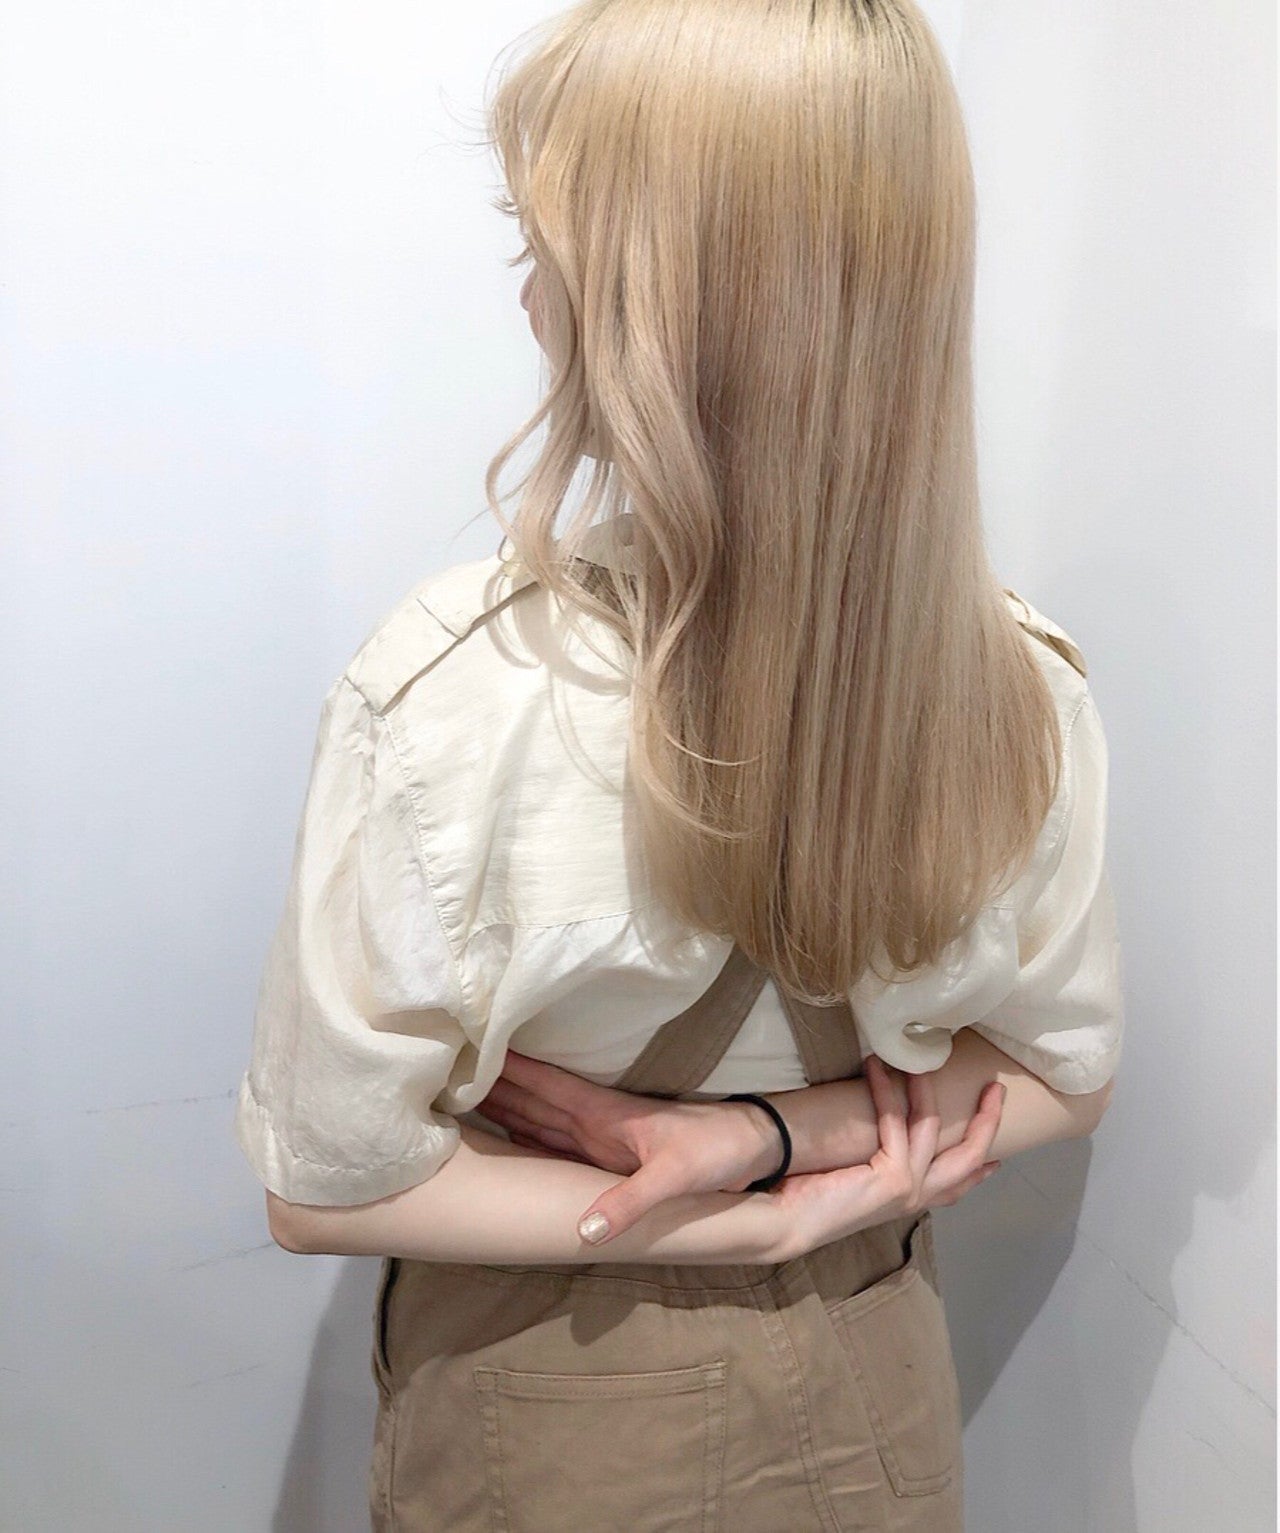 画像3 7 明髪 暗髪別 韓国で人気のヘアカラー特集 モデルプレス